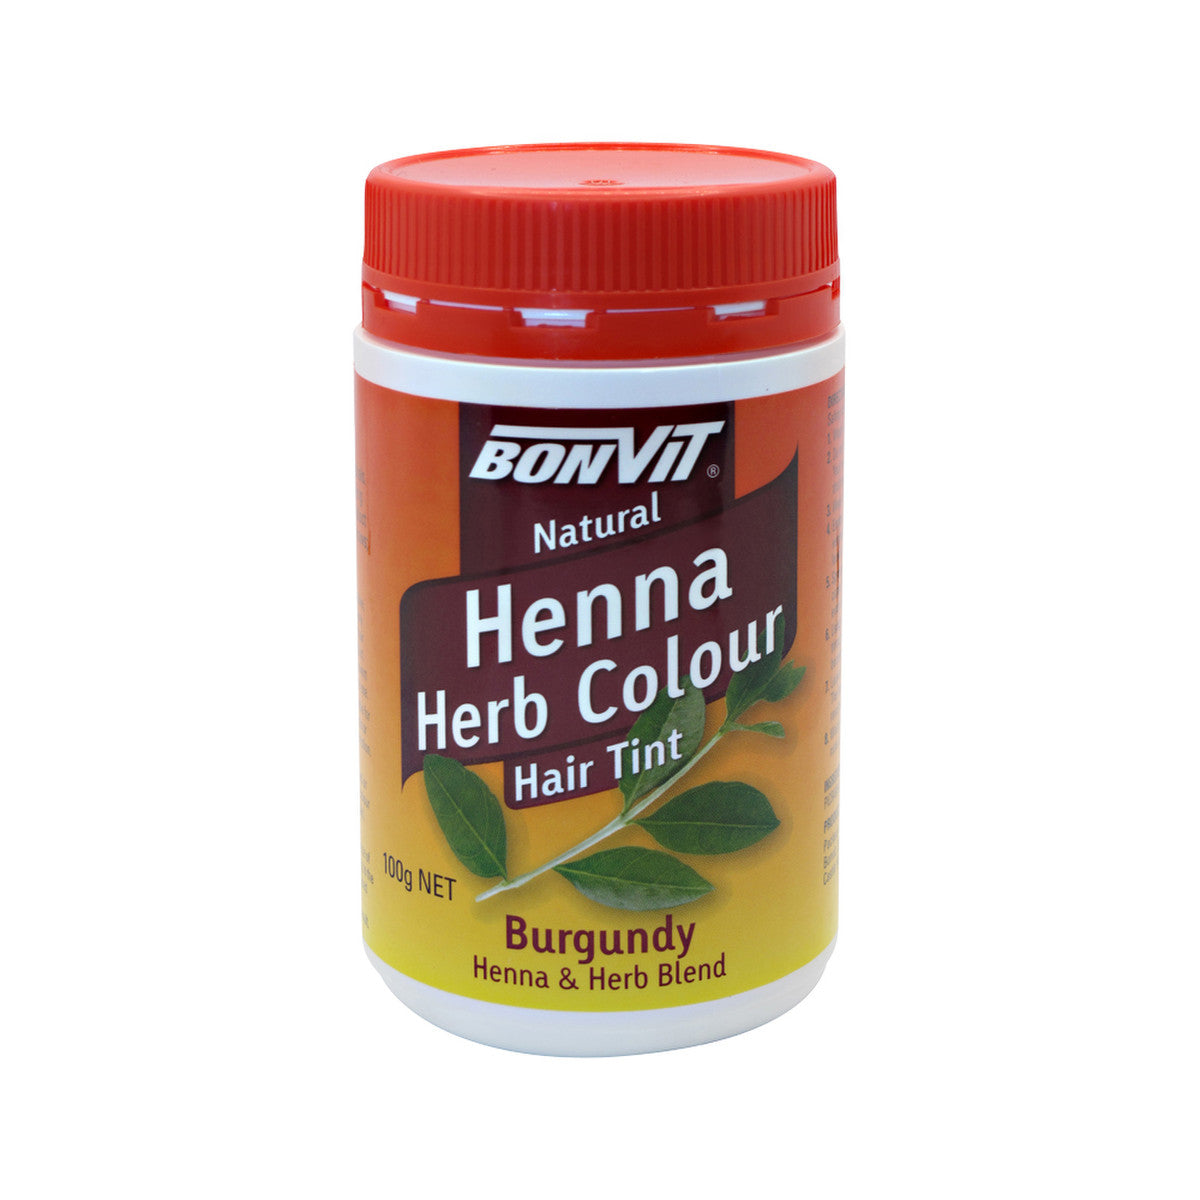 Bonvit - Henna Herb Colour Hair Tint Burgundy